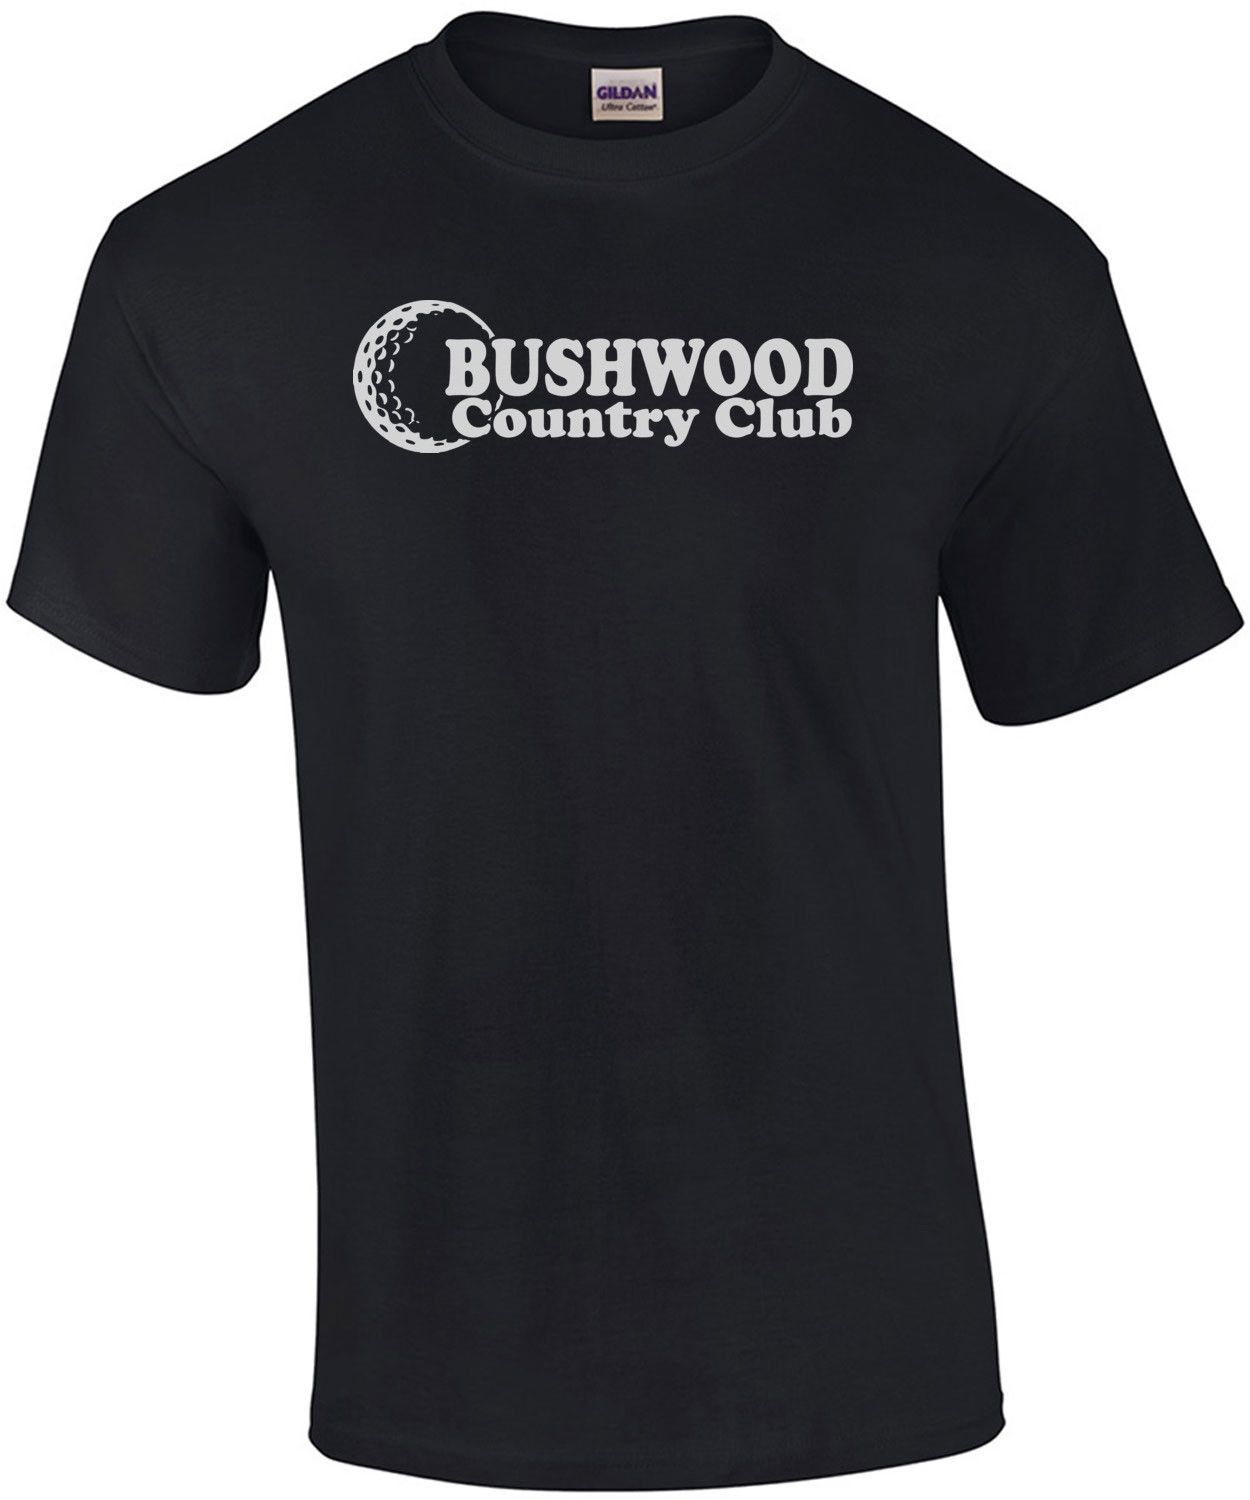 Bushwood Country Club - Caddyshack